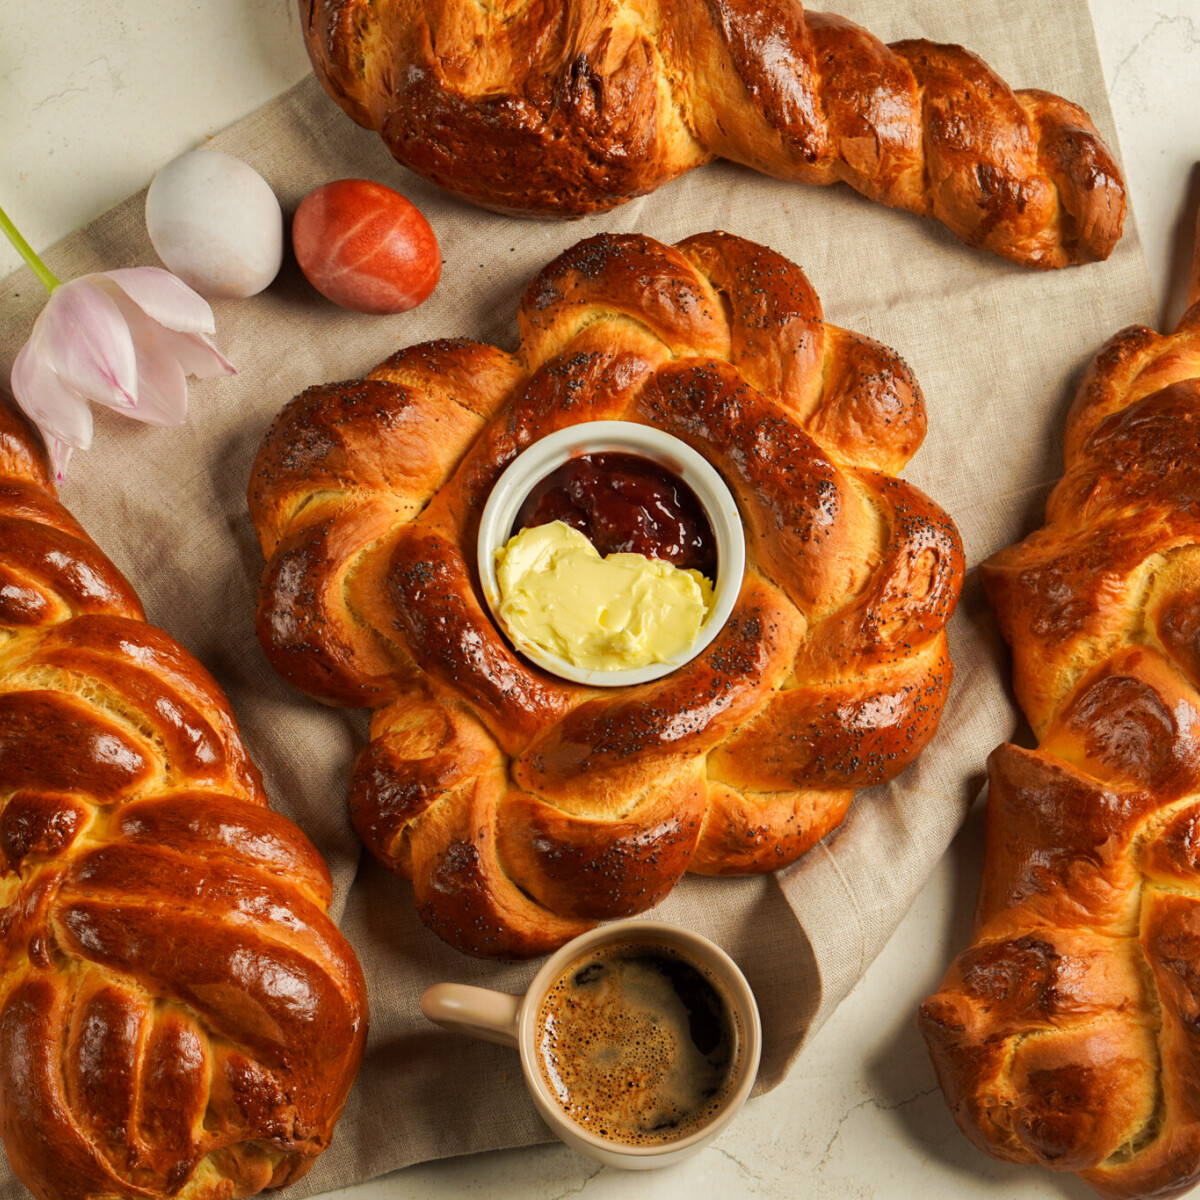 A húsvéti menü szimbolikája – Ezt jelenti a sonka, tojás, kalács